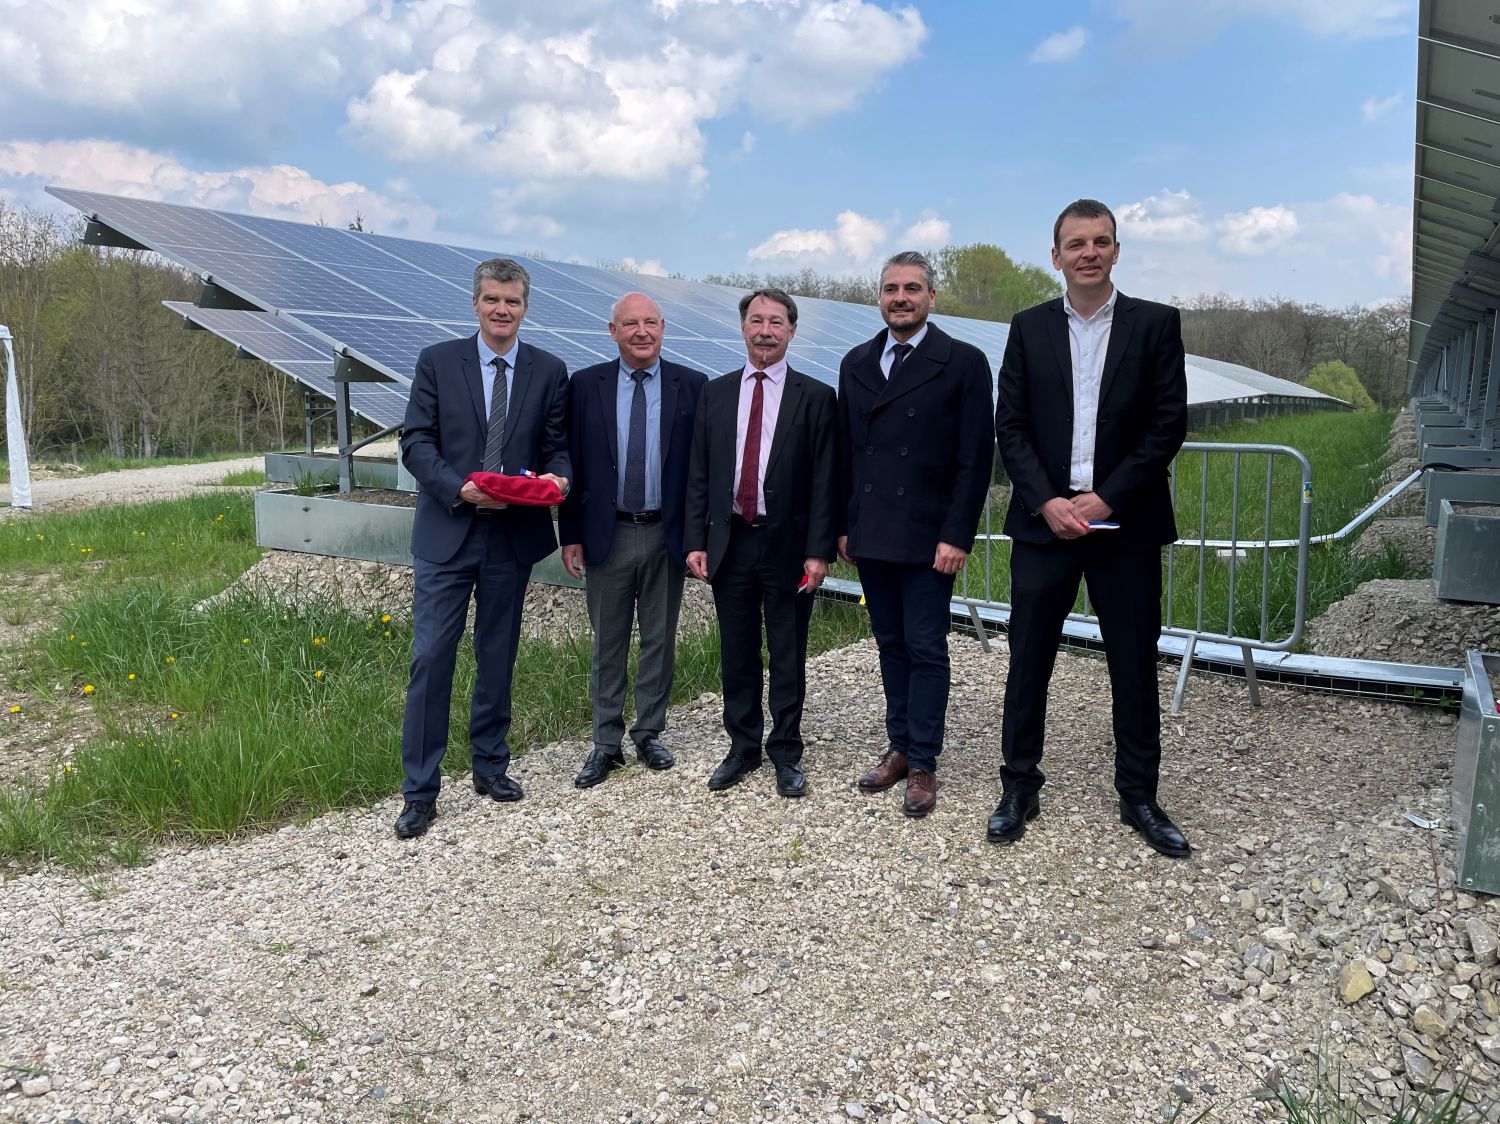 La centrale photovoltaïque de Sarreguemines a été inaugurée par les élus et Total Energies